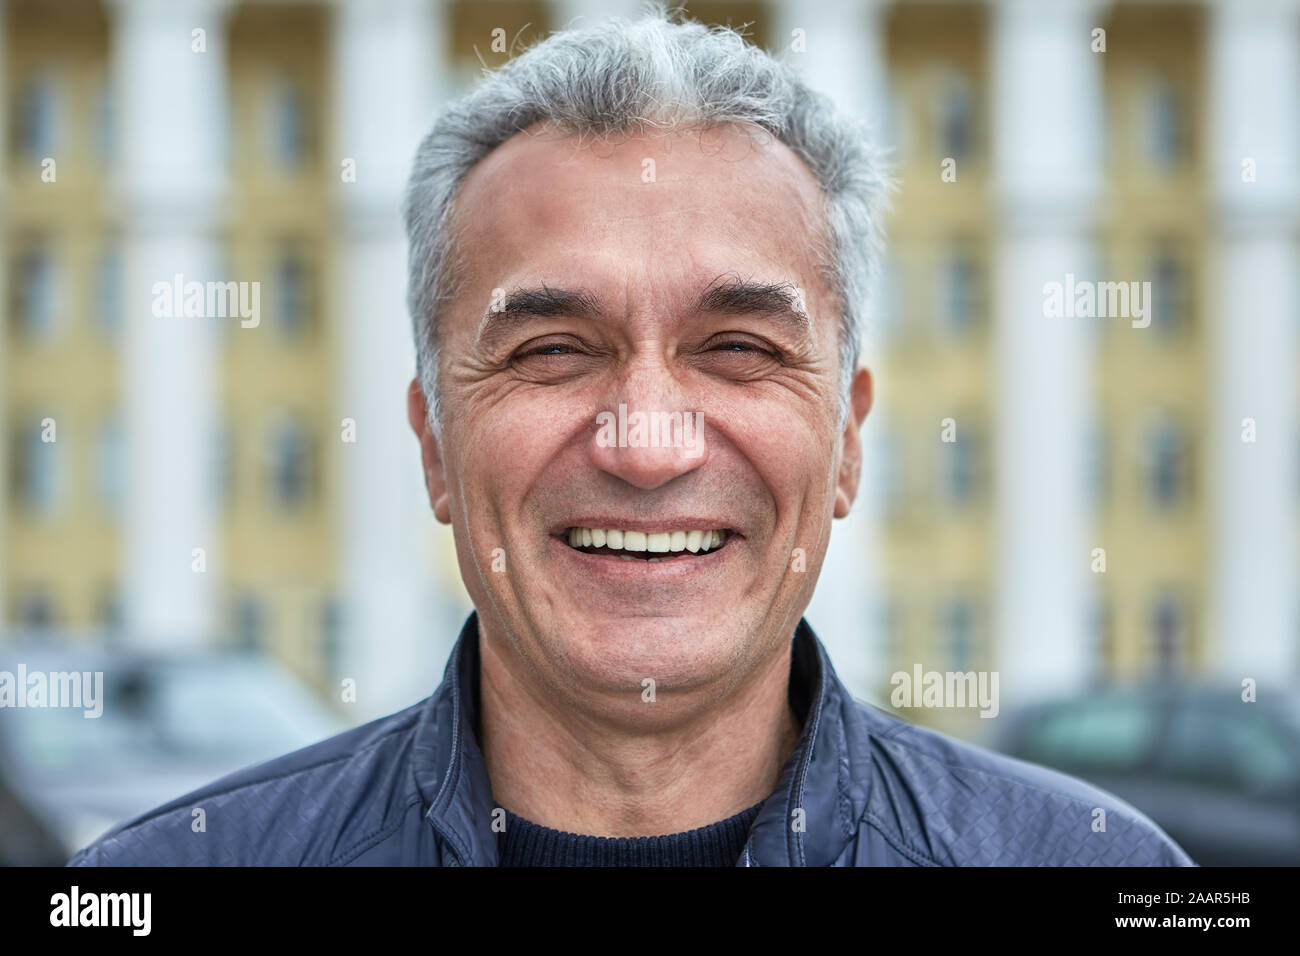 Closeup lachendem Gesicht eines älteren Geschäftsmann, Beamter, Arzt oder tv-Moderatorin. Porträt einer freudigen kaukasischen Mann über fünfzig Jahre, w Stockfoto